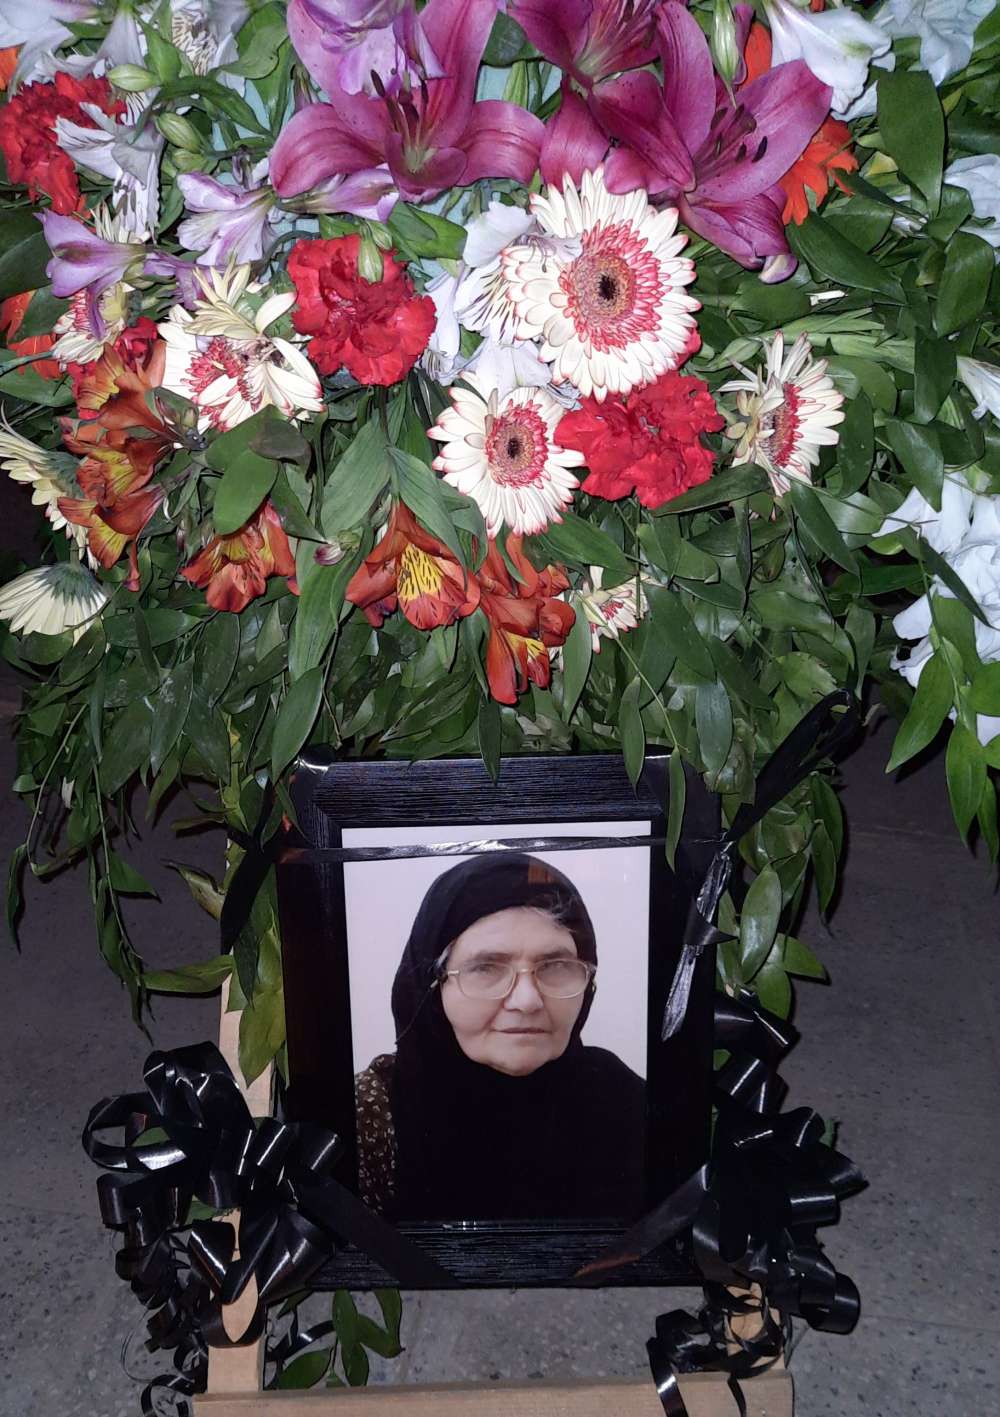 به مناسبت هفتمین روز وفات شادروان جاجیه خانم، خورشید تراشنده و یادبود حاجیه خانم نصرت تراشنده